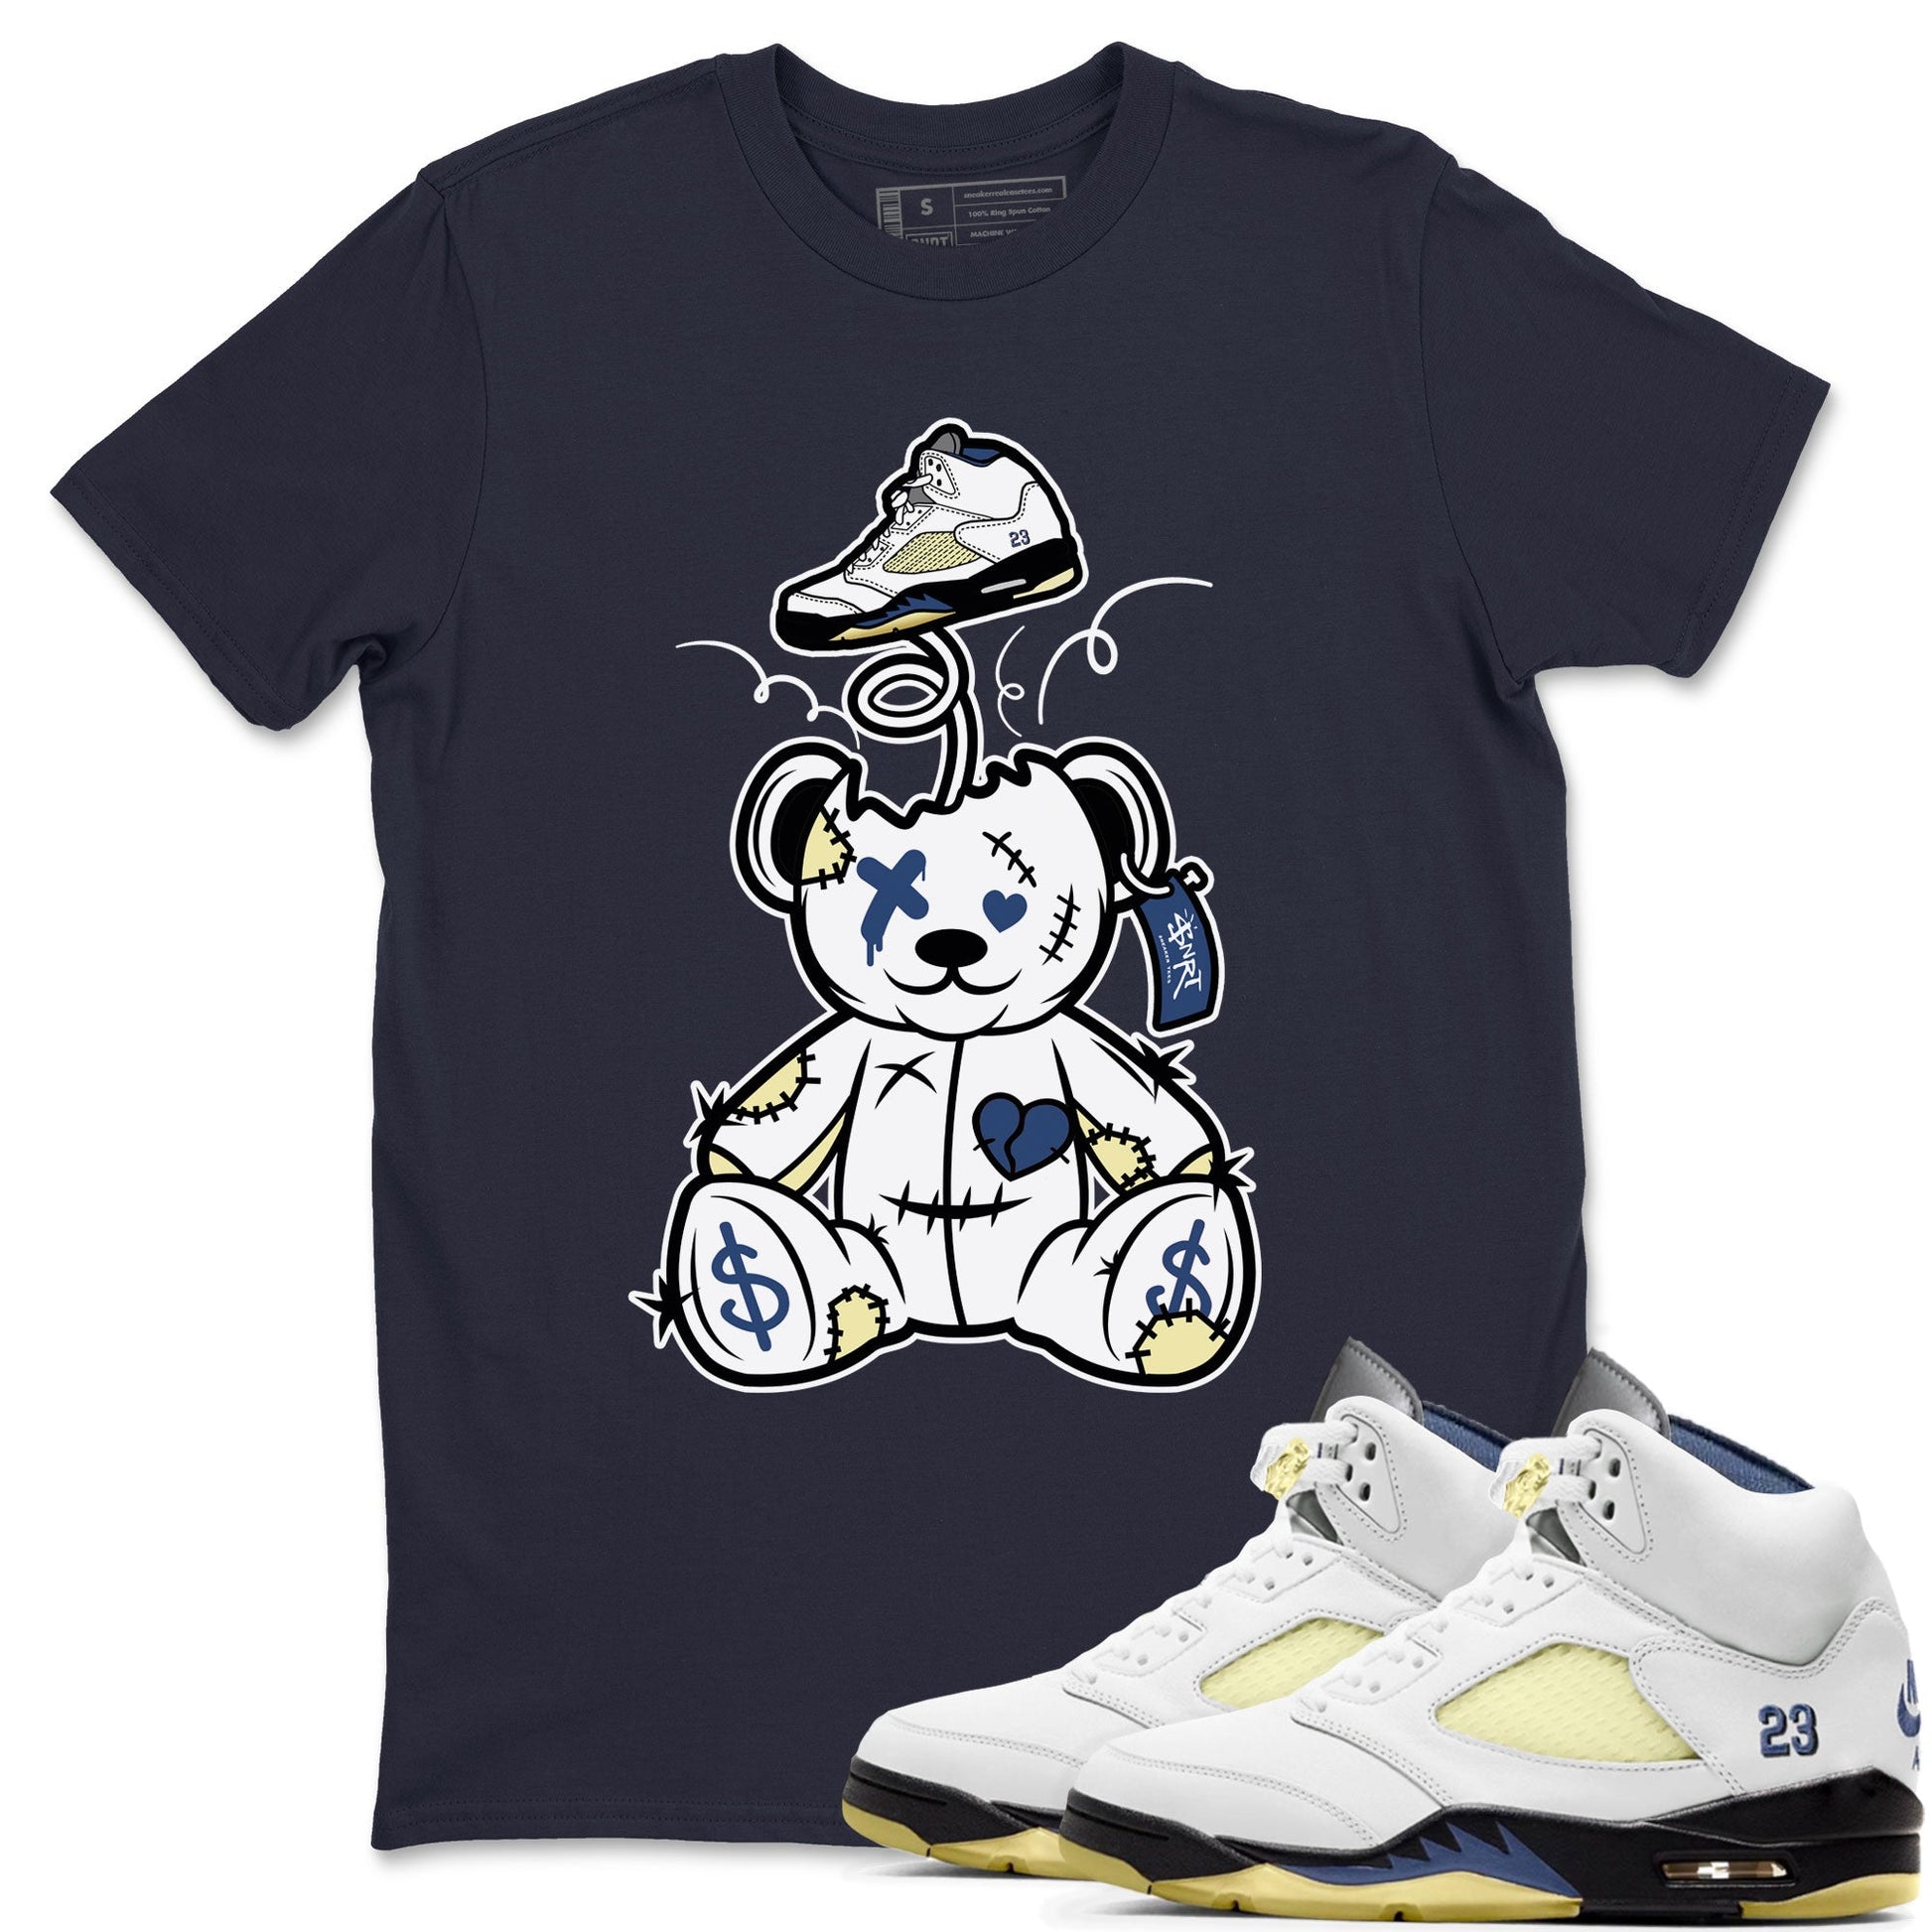 Air Jordan 5 A Ma Maniere x Dawn shirt to match jordans Surprise Teddy Bear sneaker tees Air Jordan 5 A Ma Maniere x Photon Dust SNRT Sneaker Tees Sneaker Matching Shirt Unisex Navy 1 T-Shirt